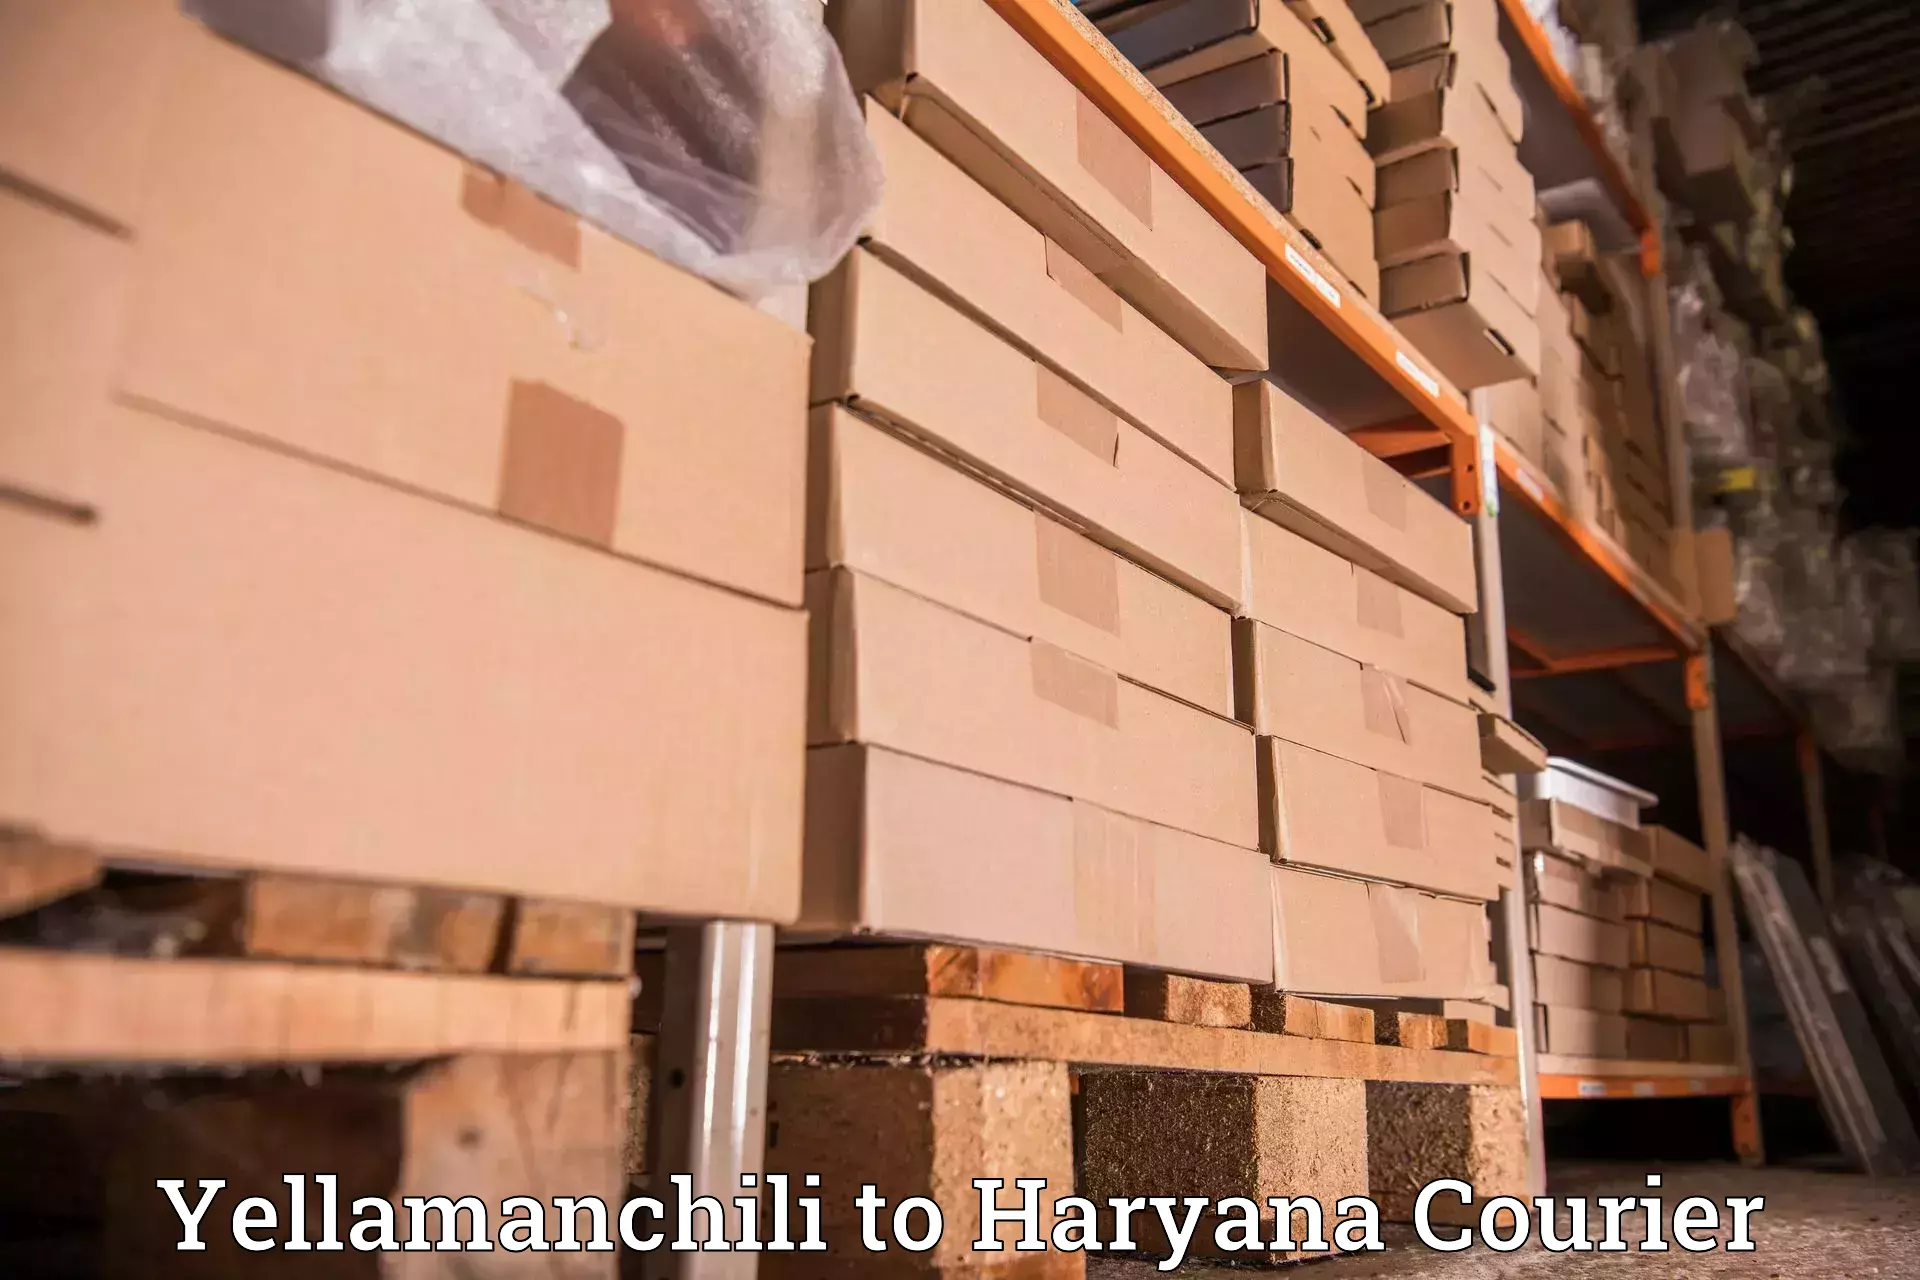 Large-scale shipping solutions Yellamanchili to Budha Khera